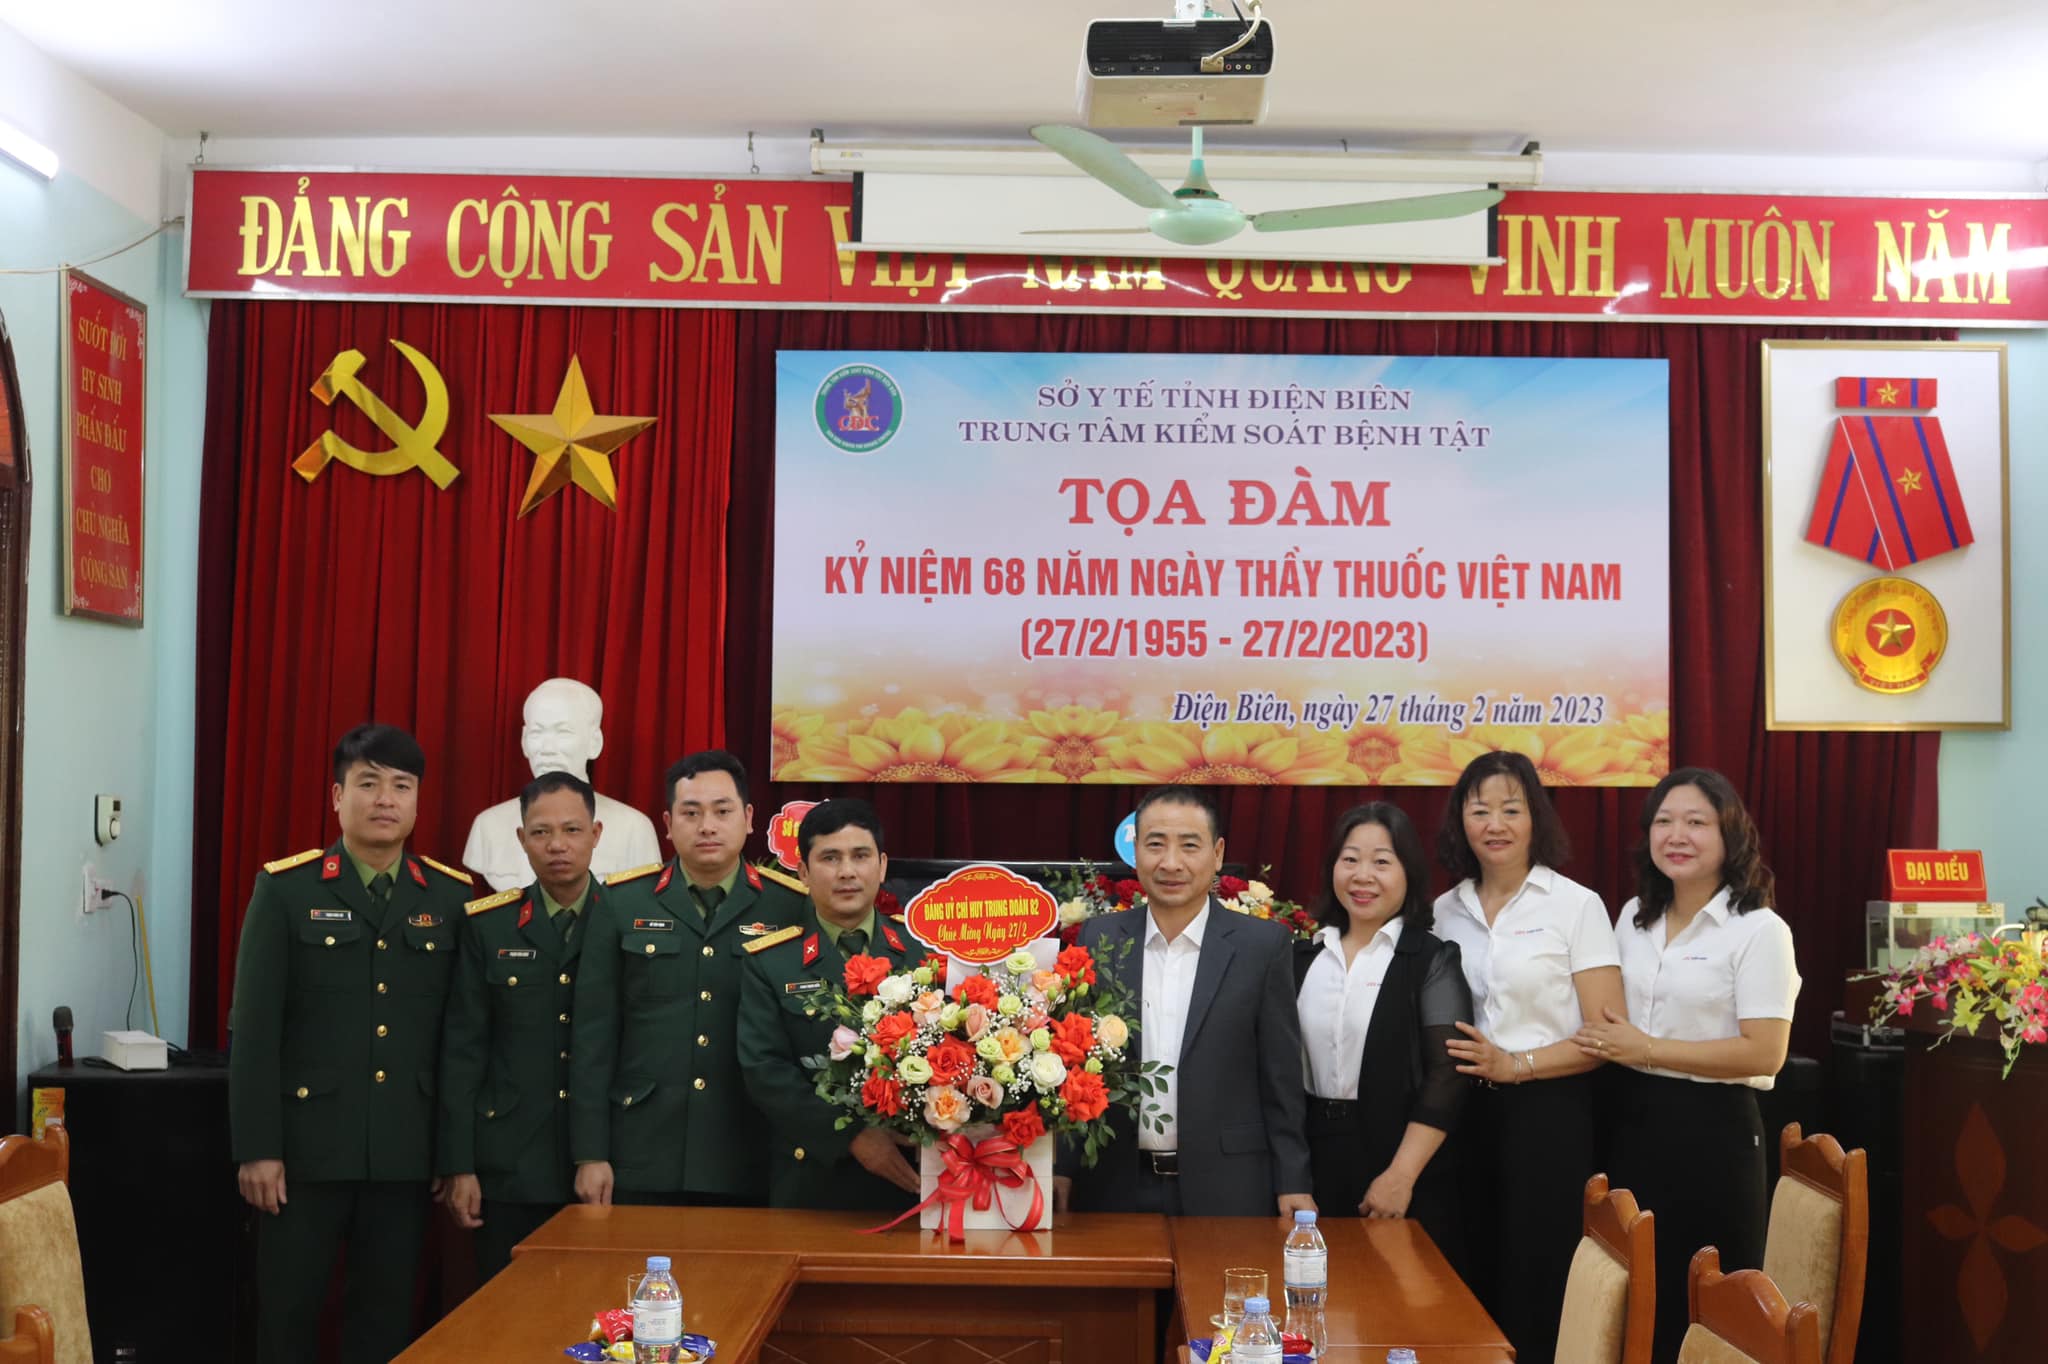 Các đơn vị chúc mừng Trung tâm Kiểm soát bệnh tật nhân Ngày Thầy thuốc Việt Nam